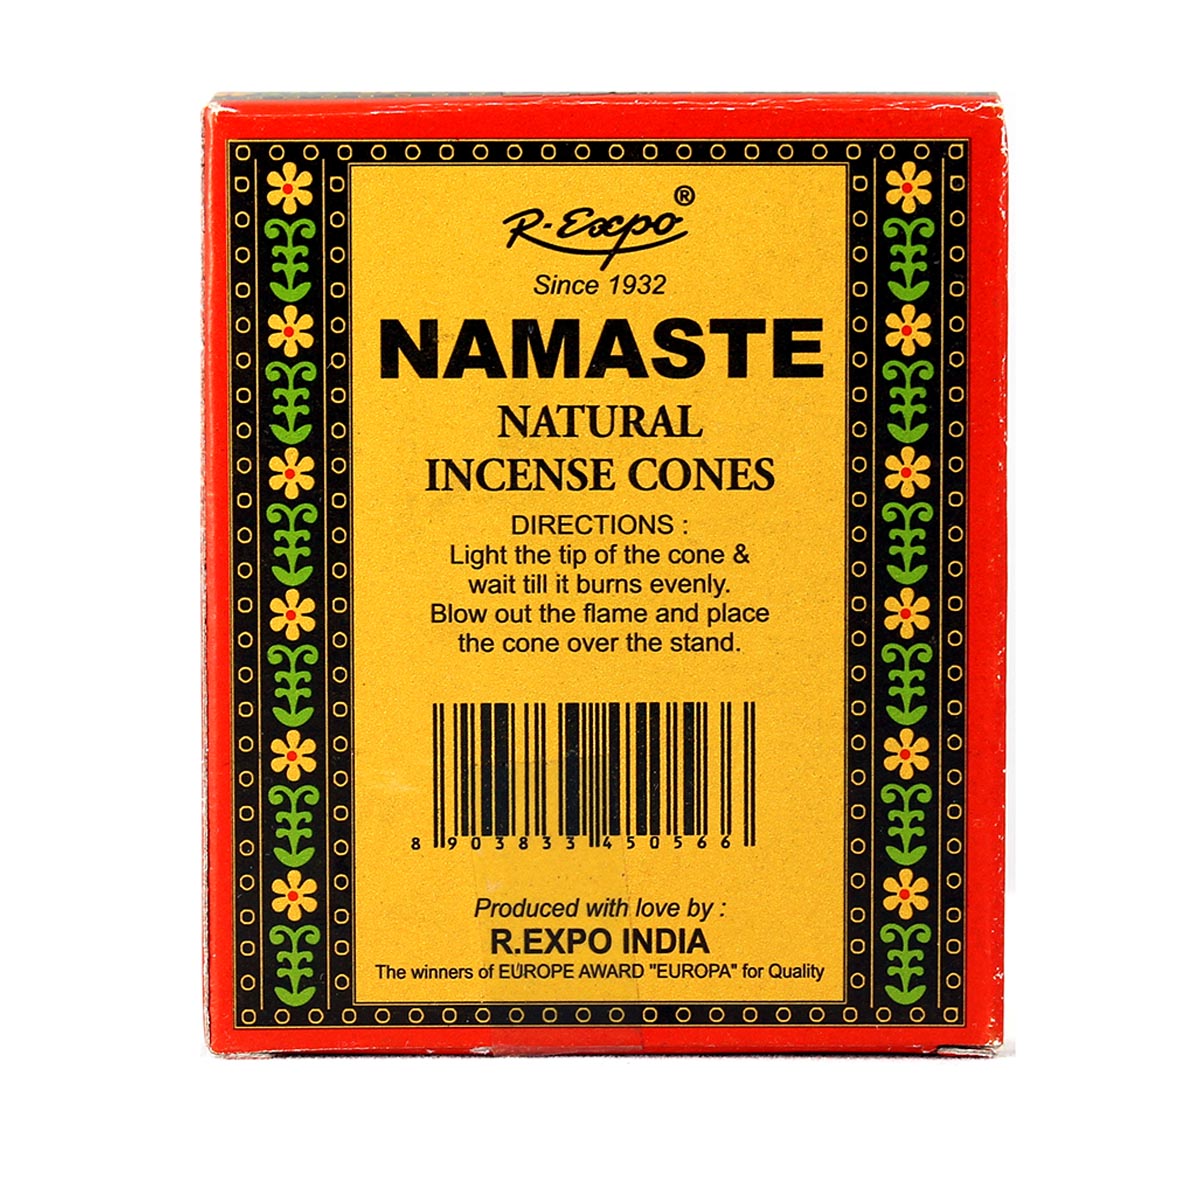 Back of Namaste Rose box